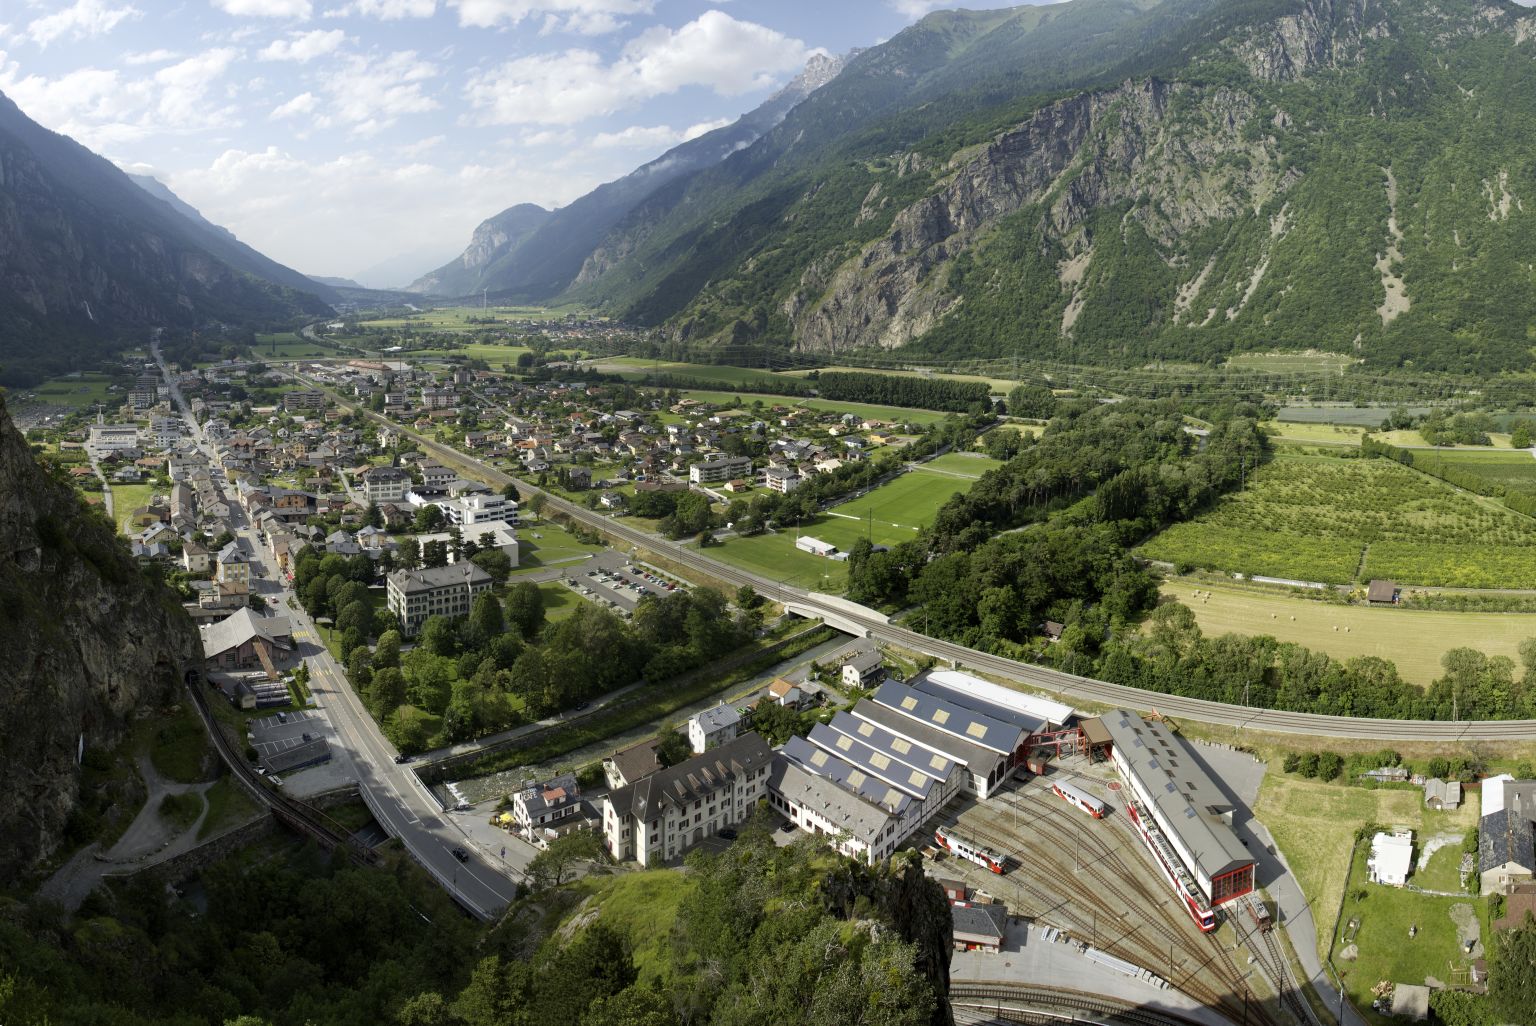 Das Dorf Vernayaz von oben gesehen mit der Cascade de la Pissevache sichtbar. Wallis, Schweiz